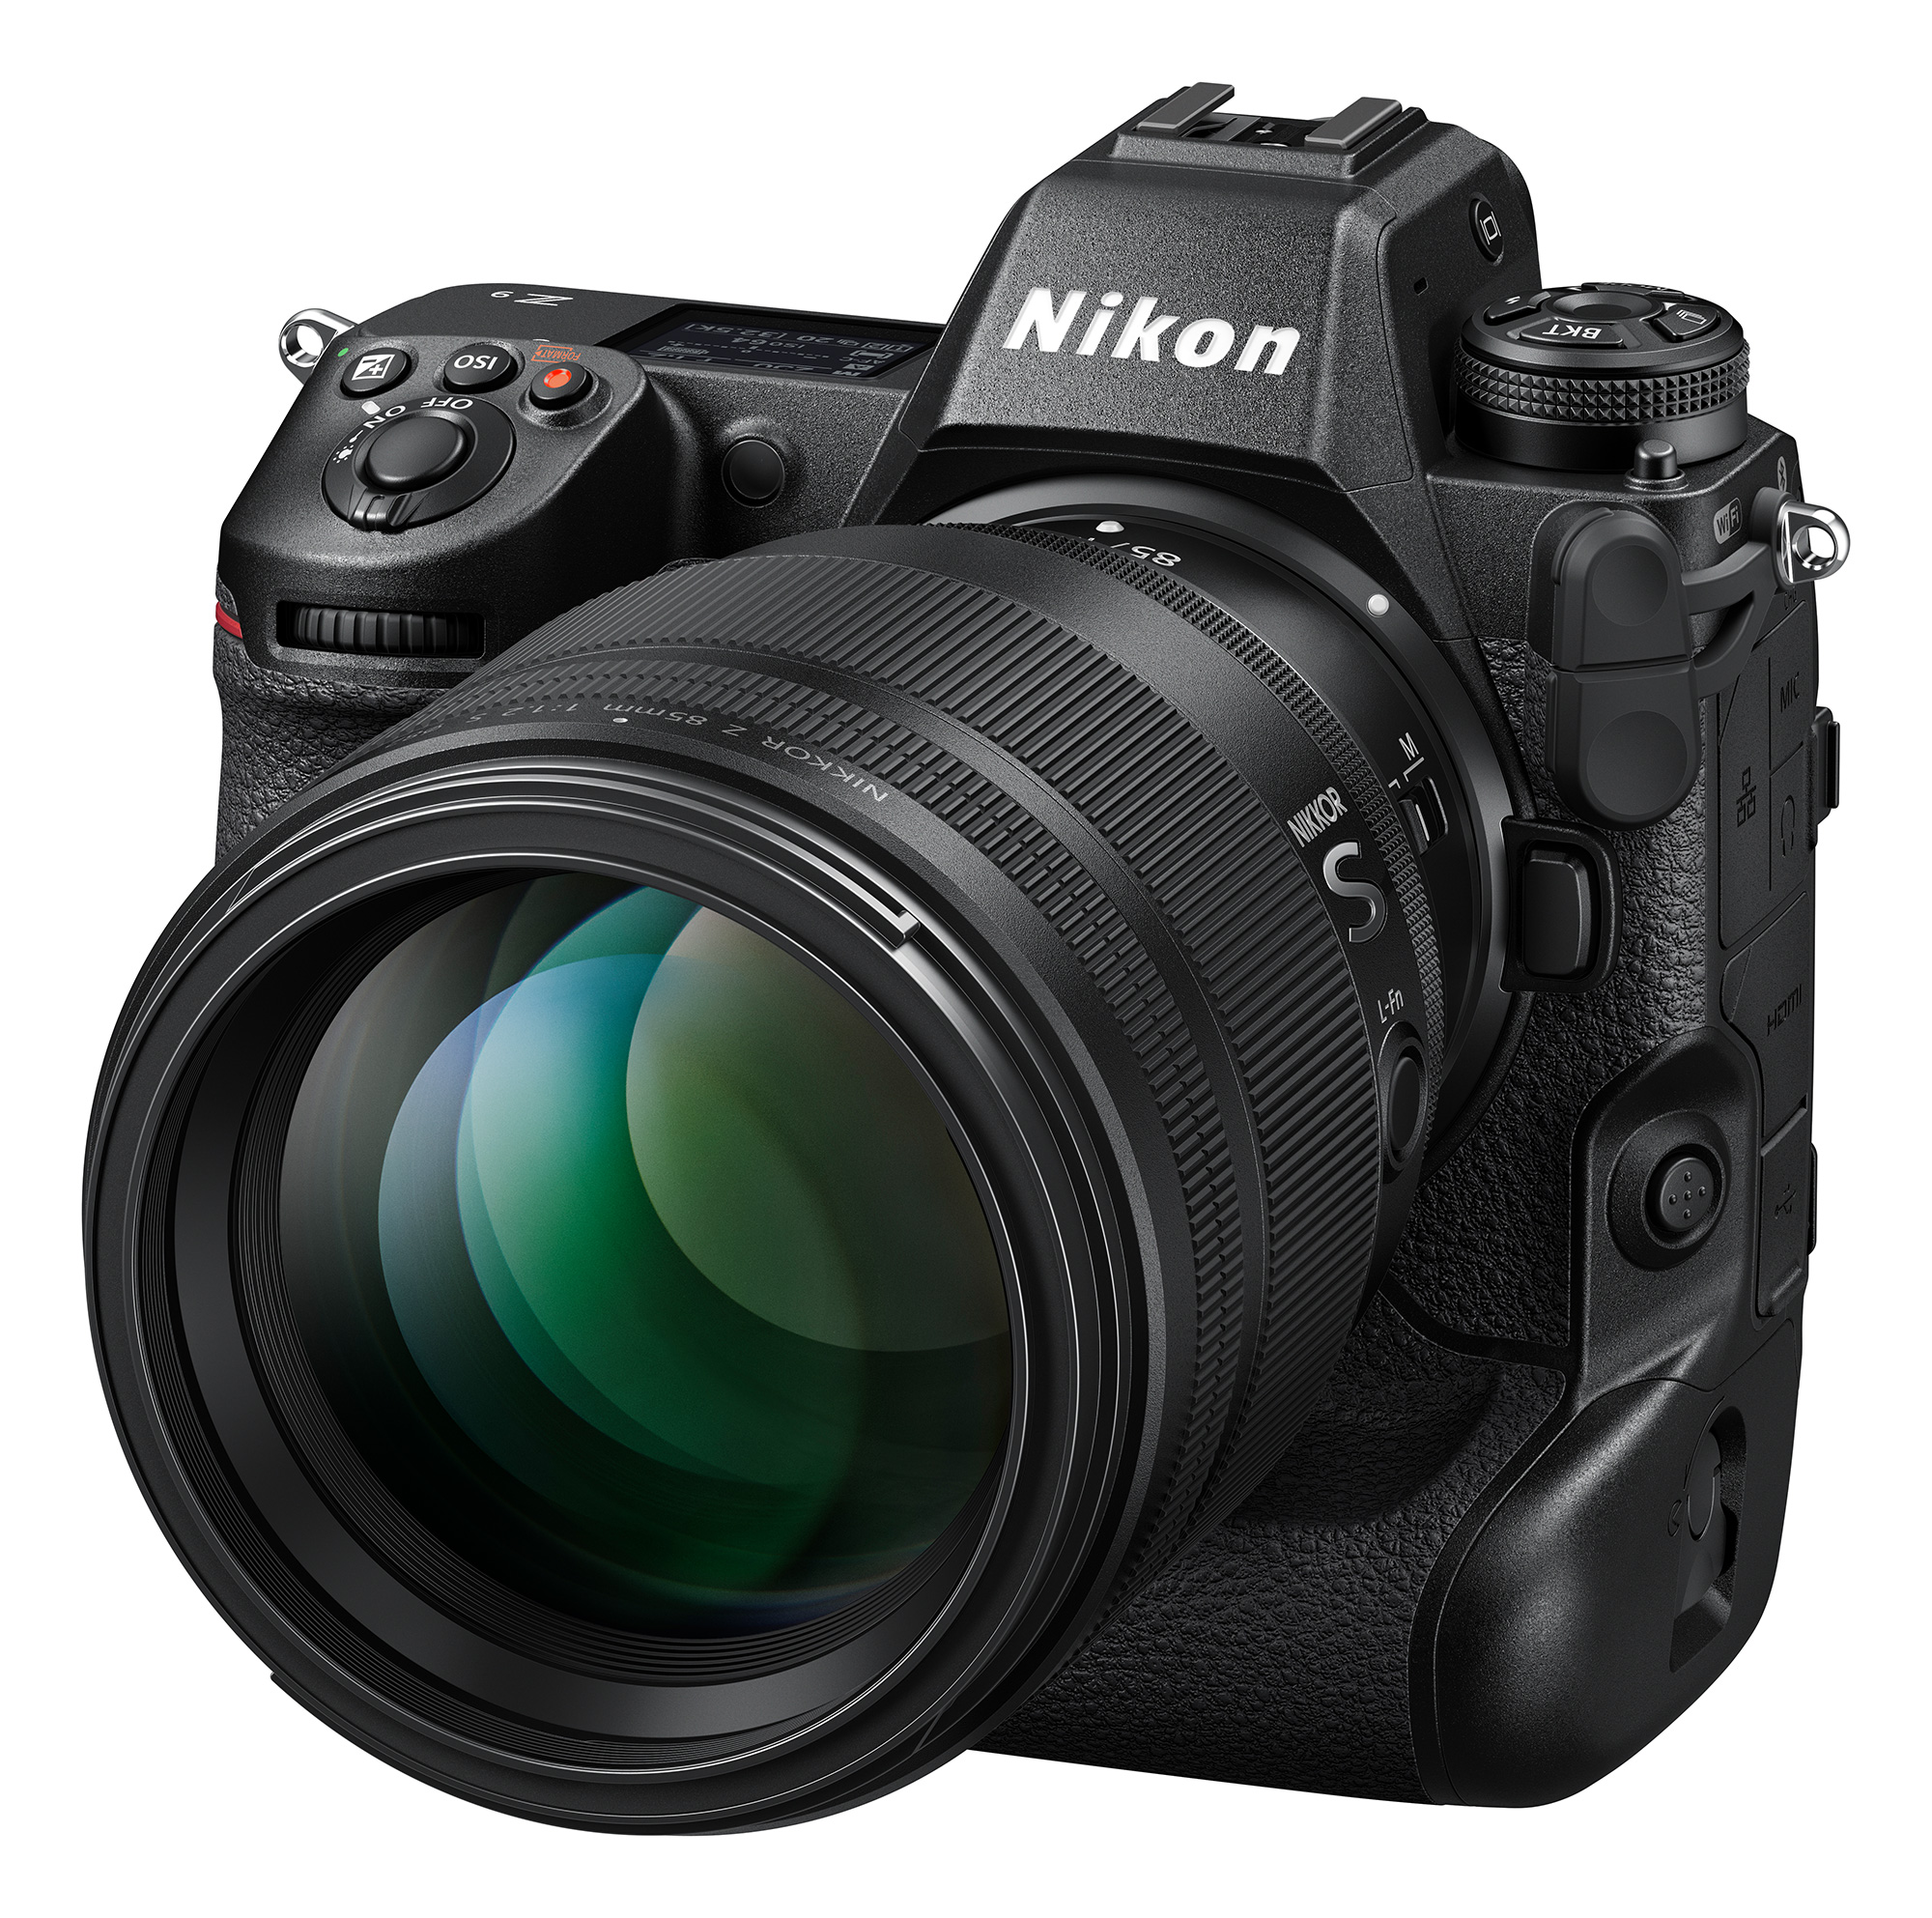 New Nikon full-frame lenses: Pancake Z 26 mm f/2.8 and Z 85 mm f/1.2 S for pro users